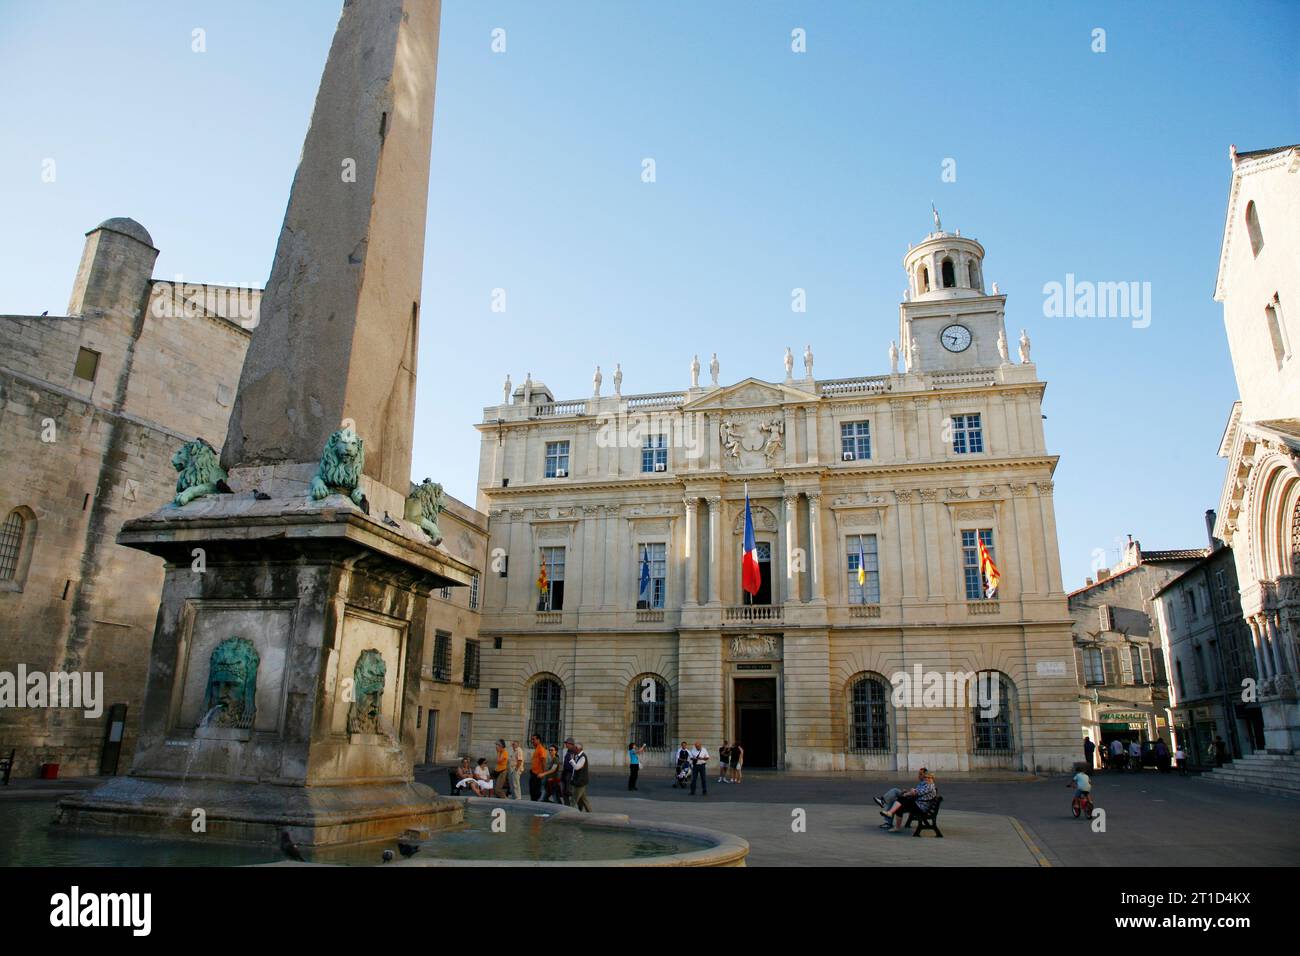 Place de Republic, hotel de Ville, Arles, Provence, France. Stock Photo